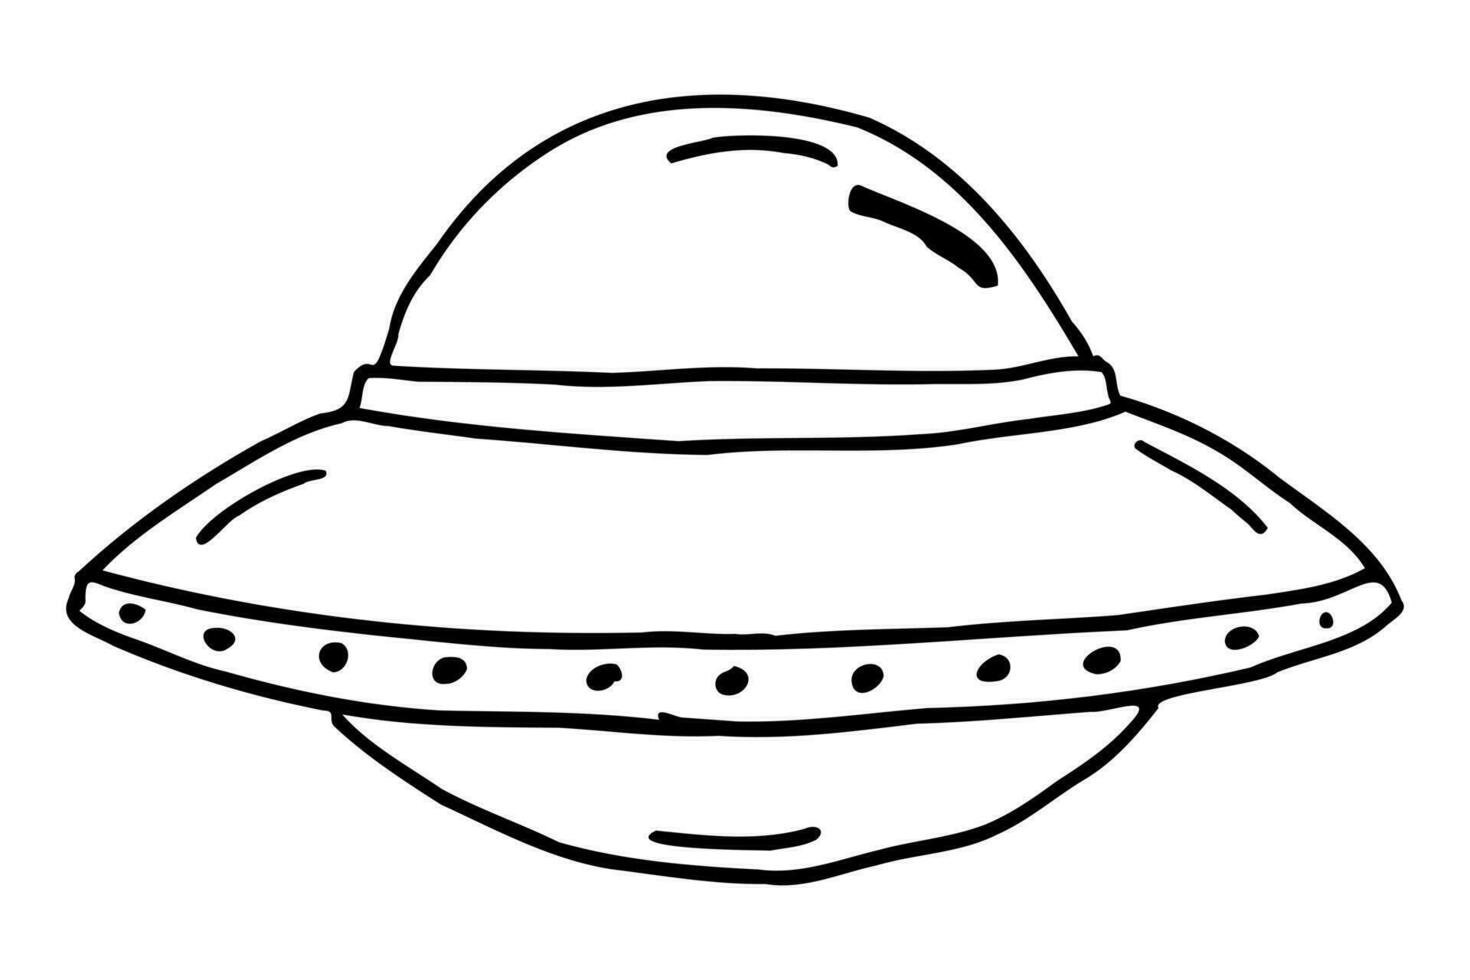 schema cartone animato ufo alieno aereo. ufo, alieno, illustrazione, vettore. vettore